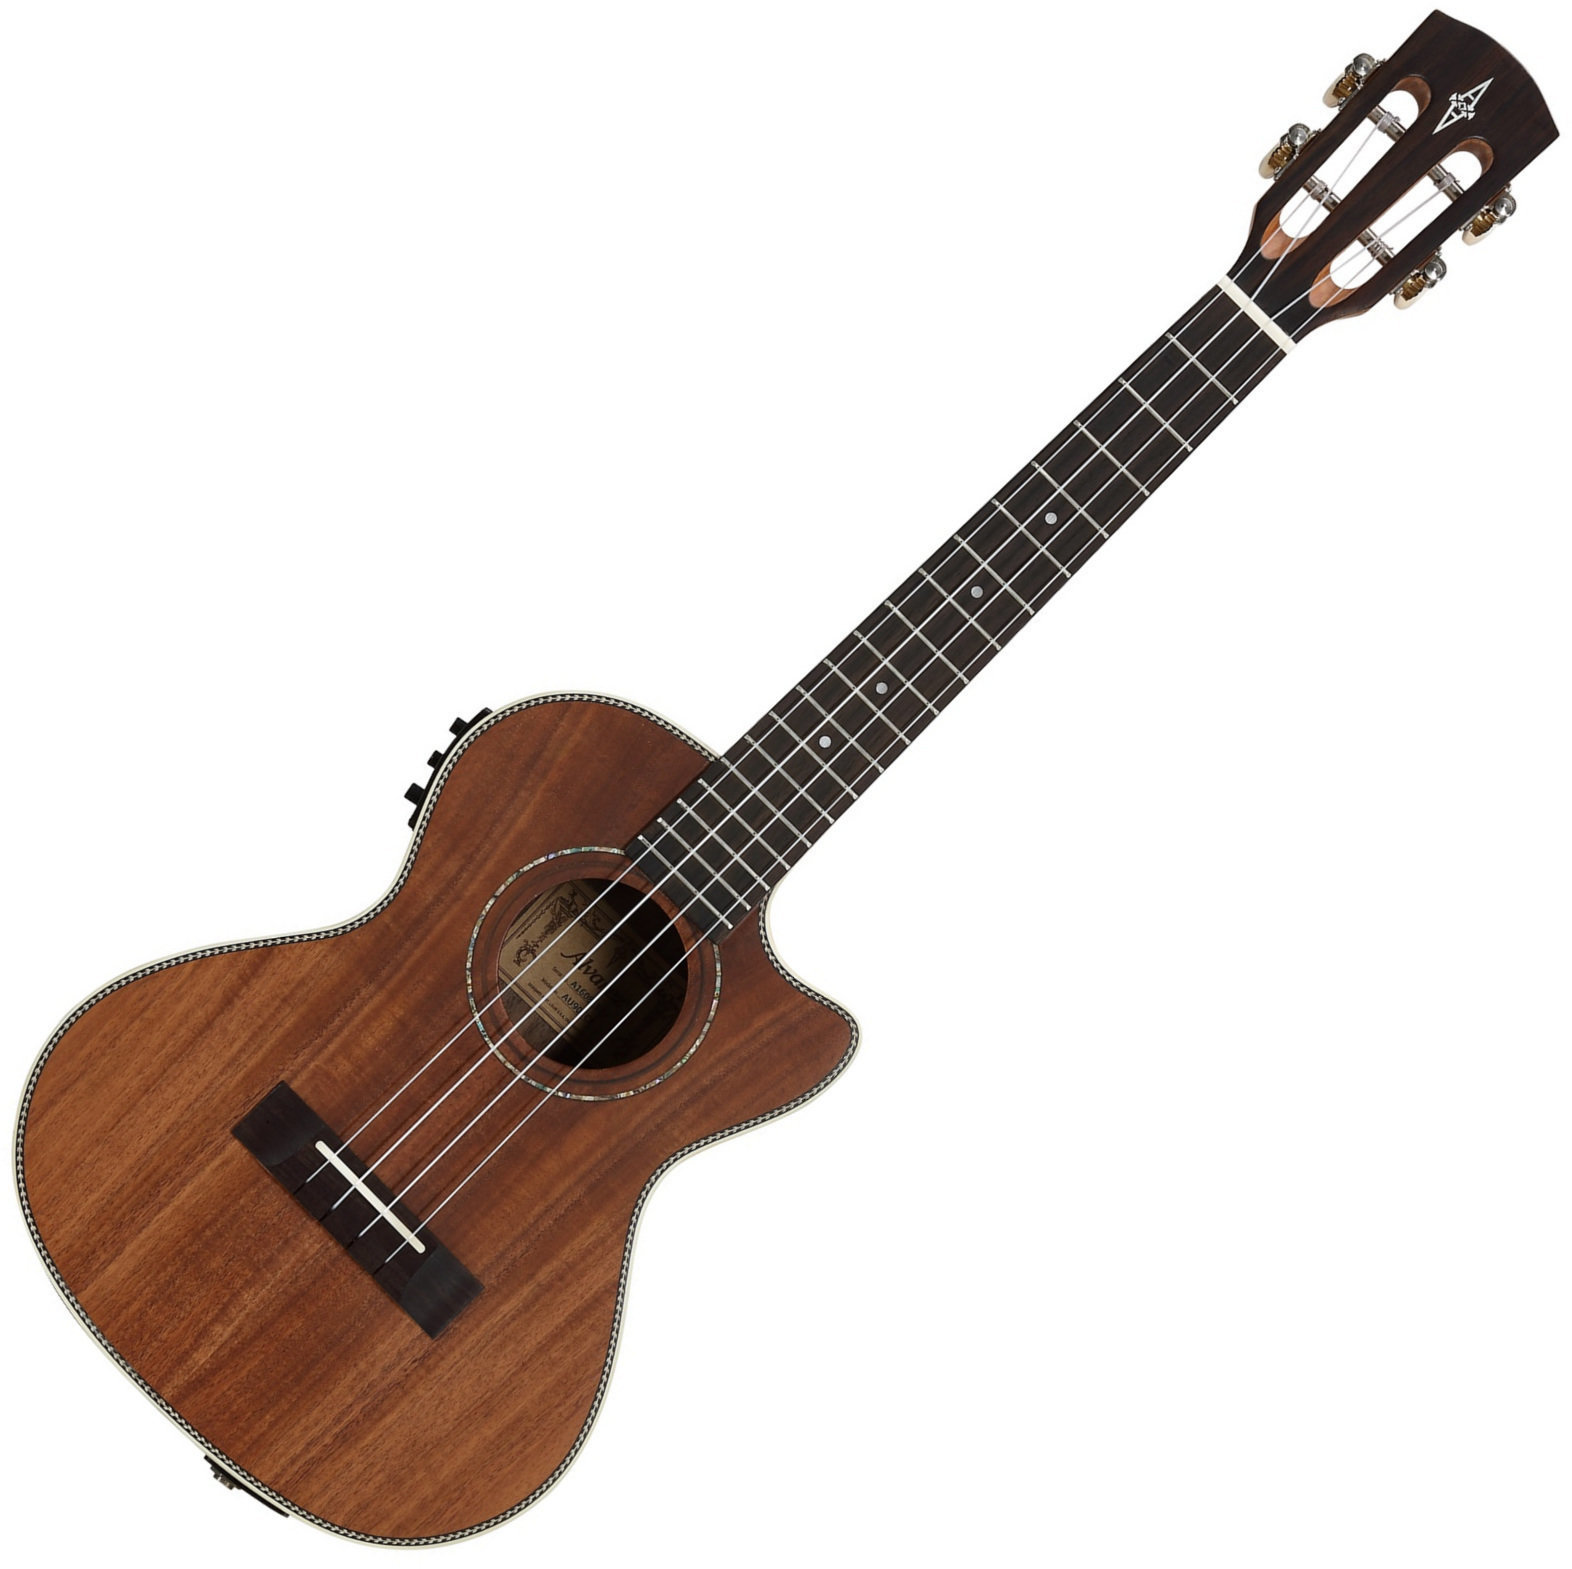 Tenor ukulele Alvarez AU90TCE Tenor ukulele Natural